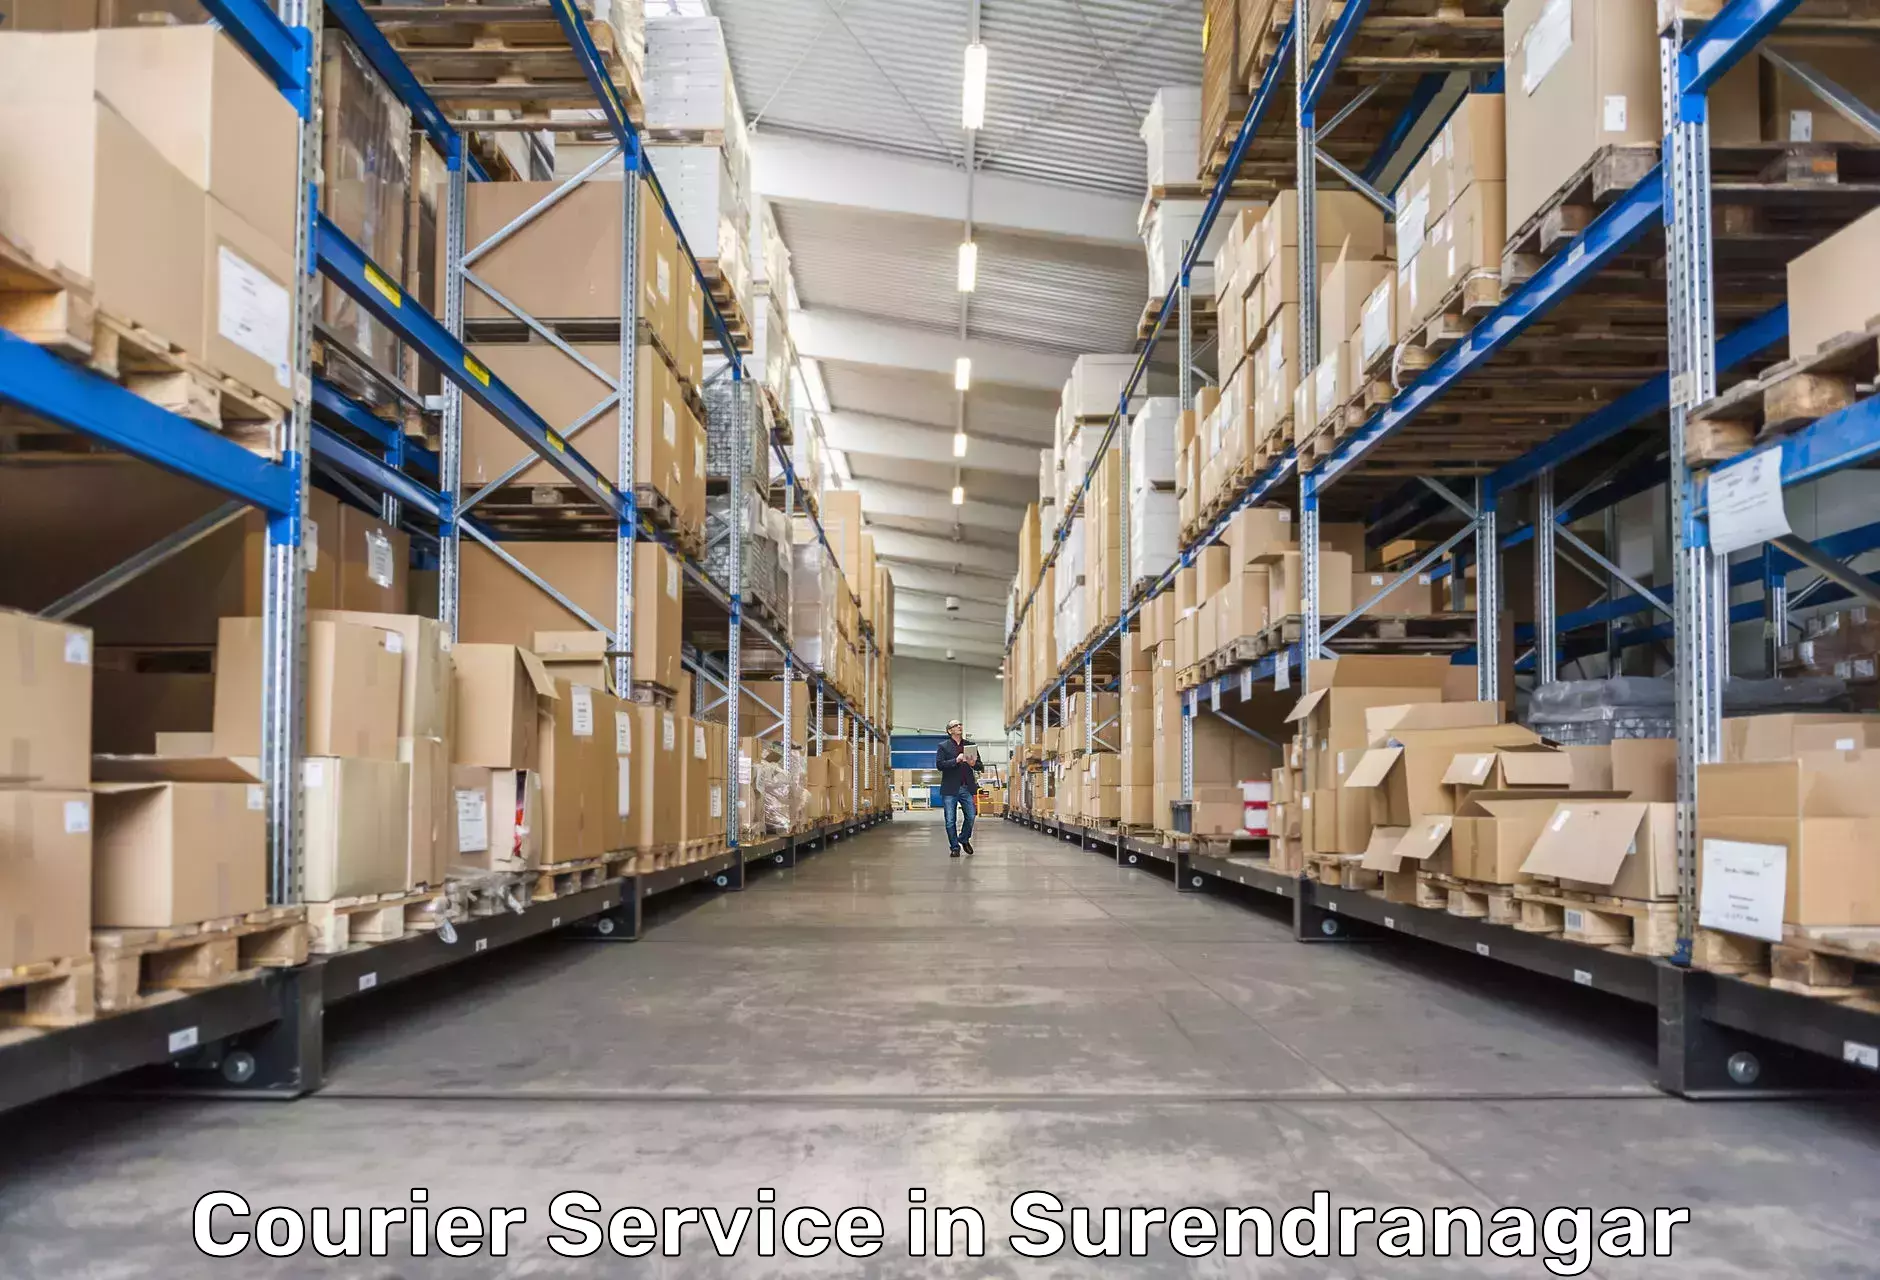 High-capacity parcel service in Surendranagar